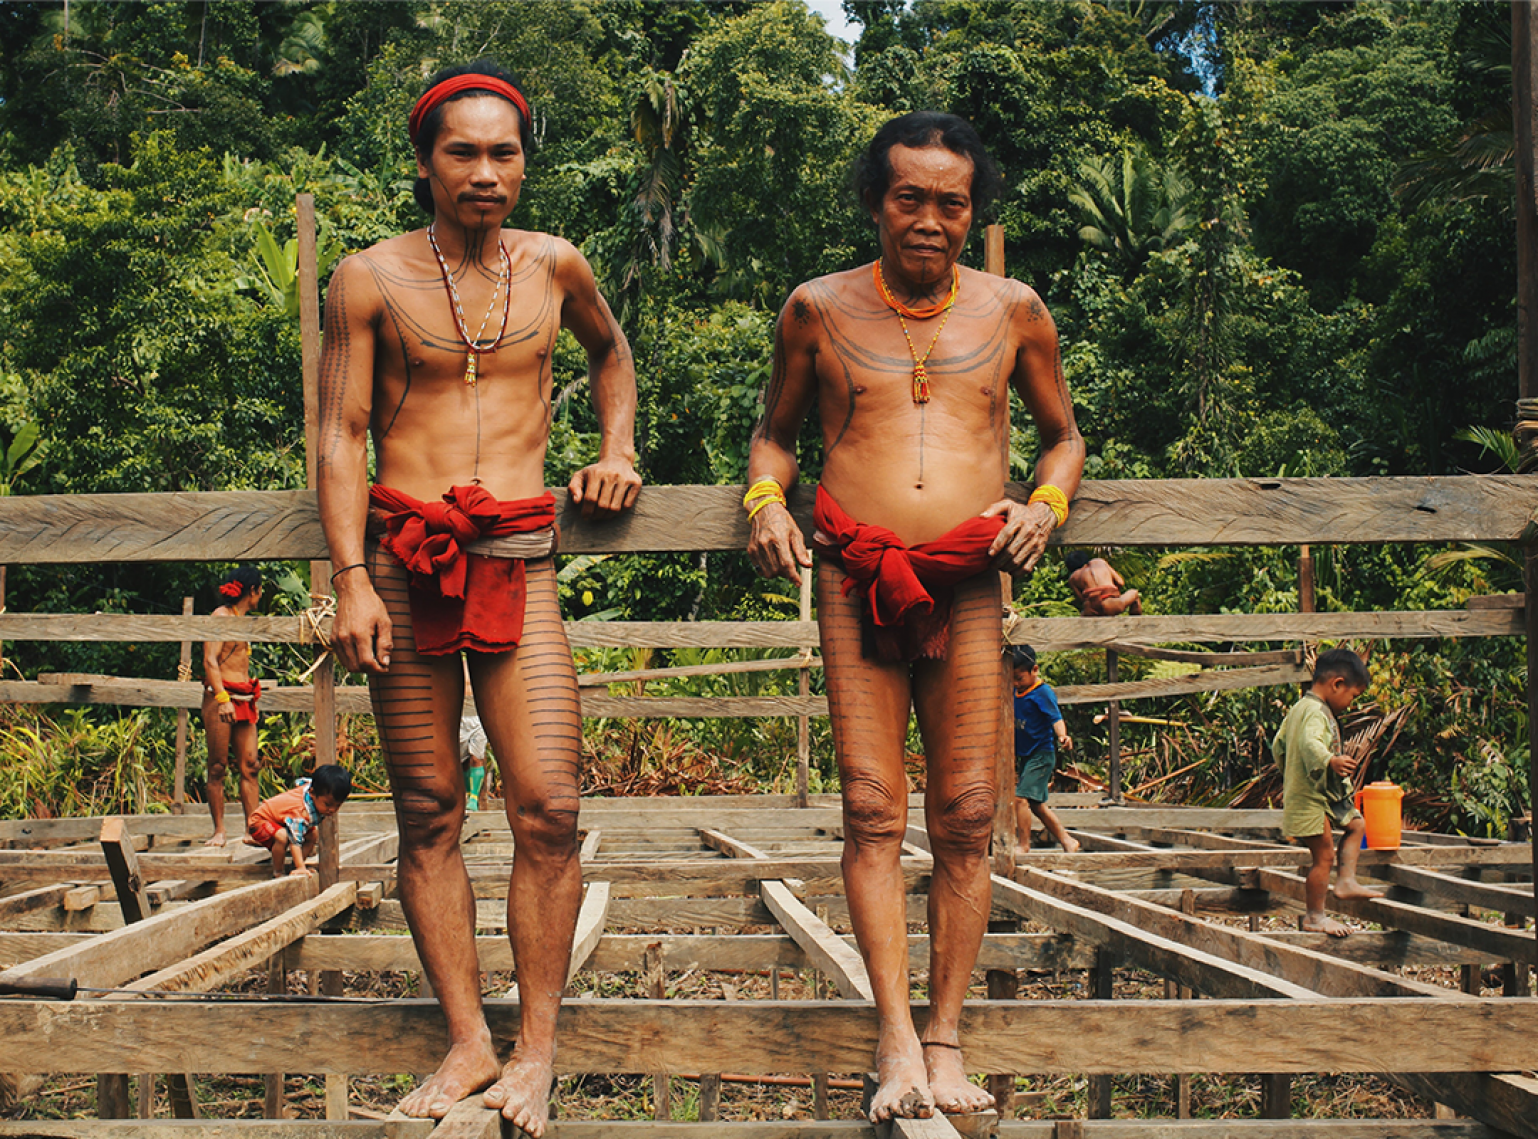 L'histoire d'Adanys et la rencontre avec les Mentawaï